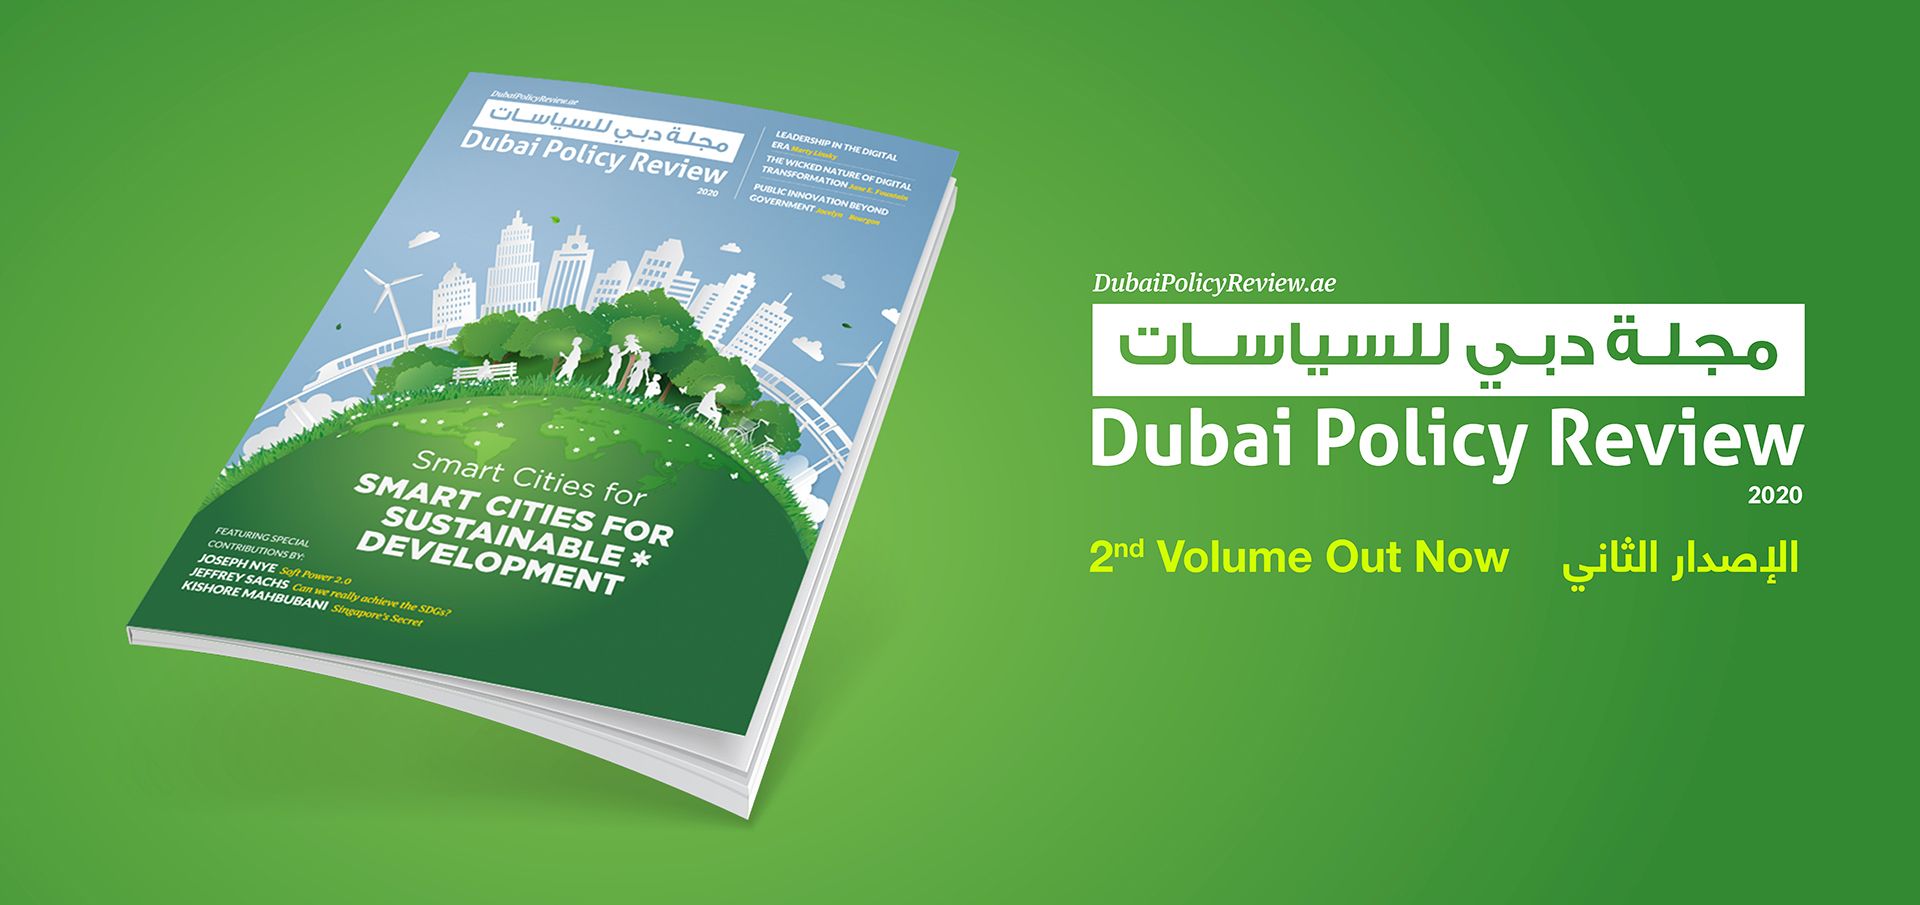 Dubai Policy Review